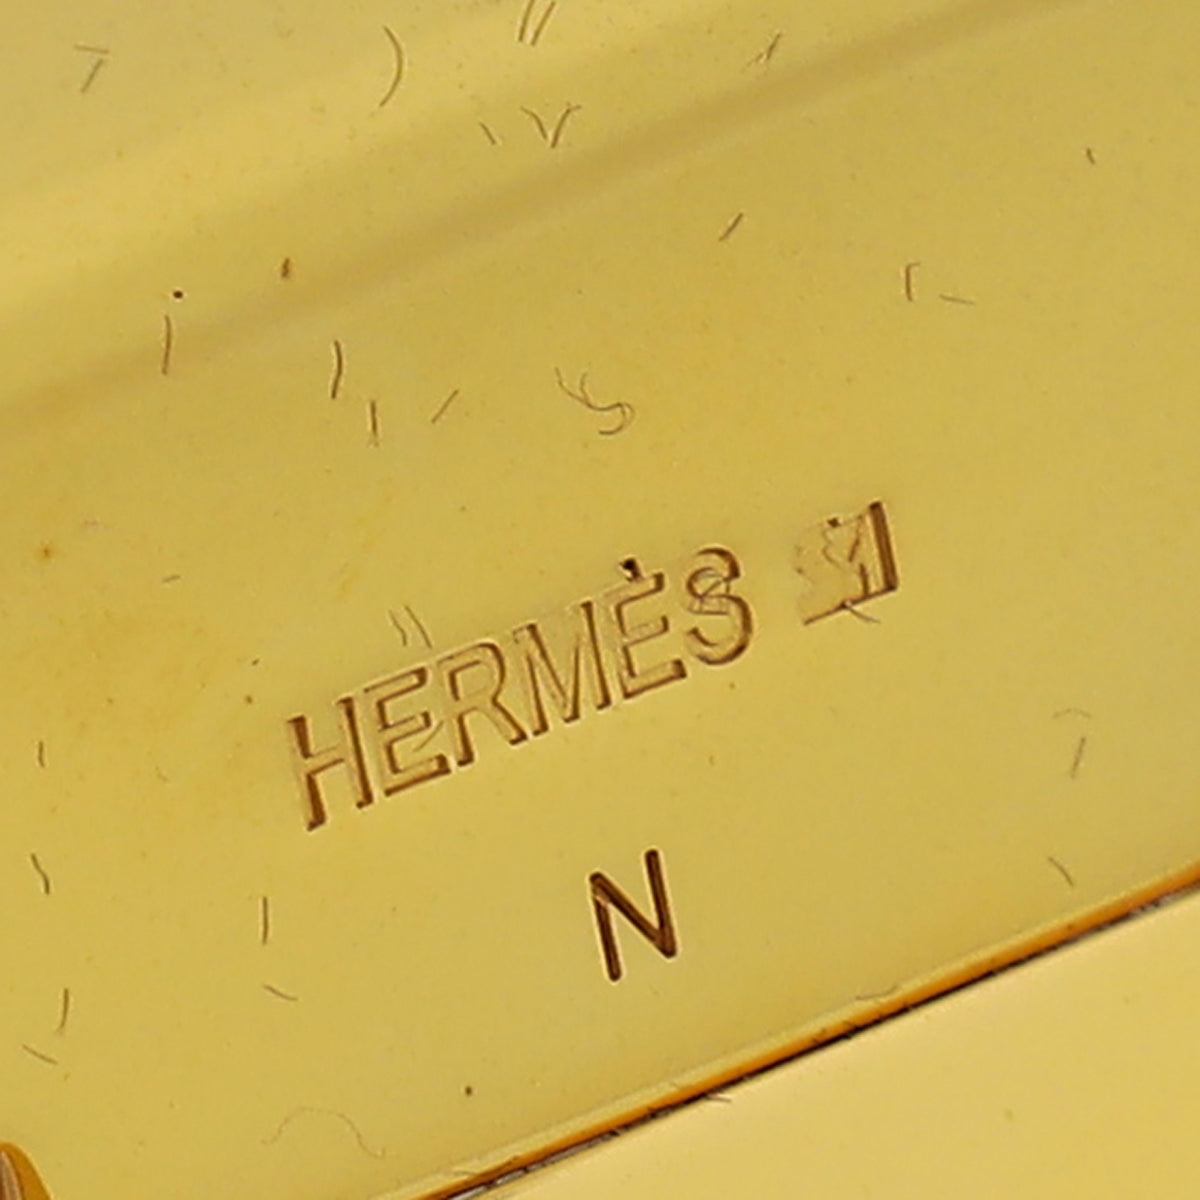 Hermes Noir Clic H XL Wide PM Bracelet